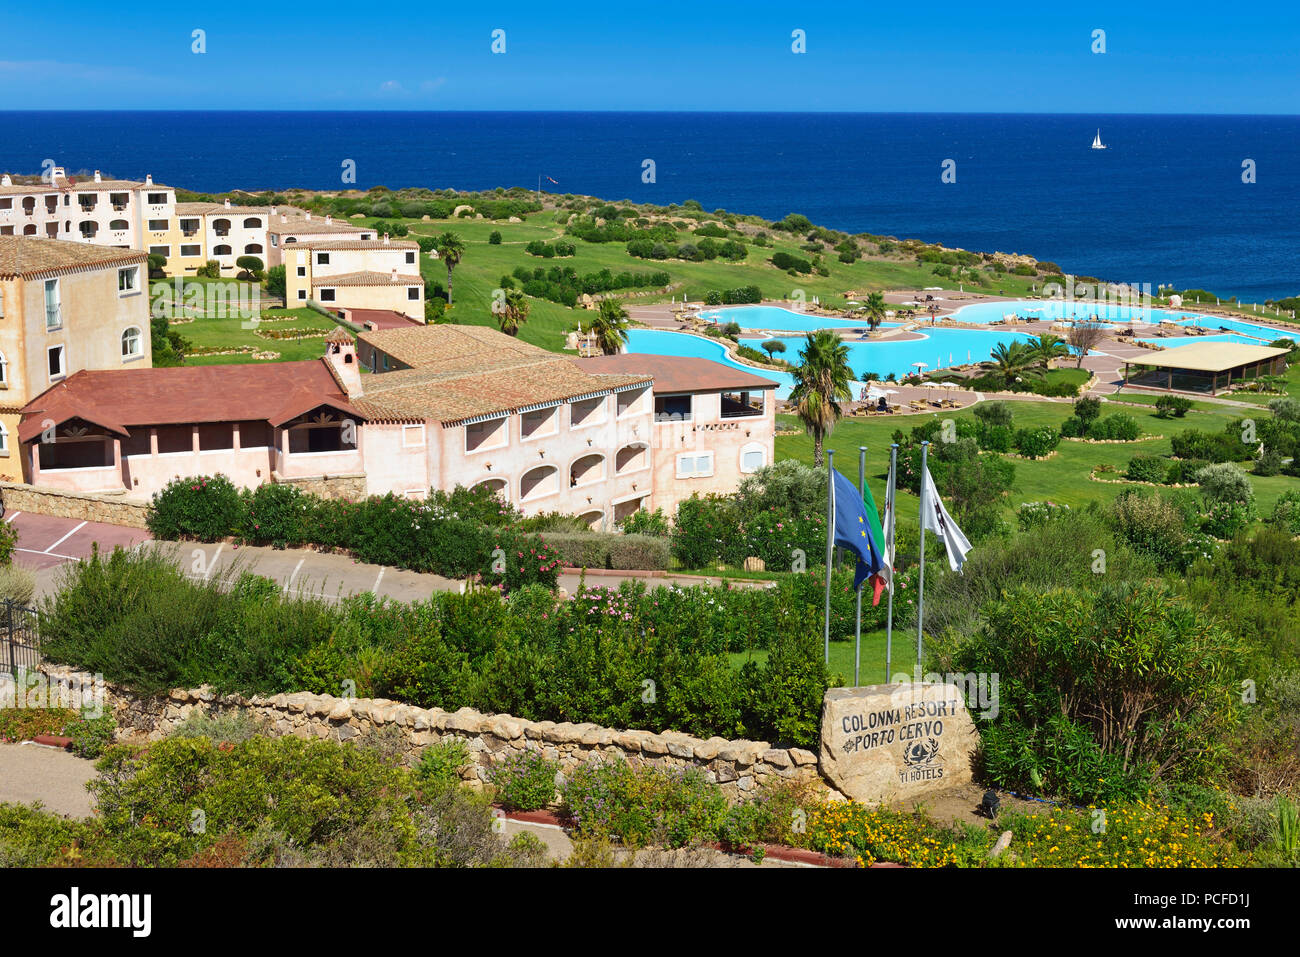 Golf Club Colonna Resort Porto Cervo, Sardaigne, Italie Banque D'Images